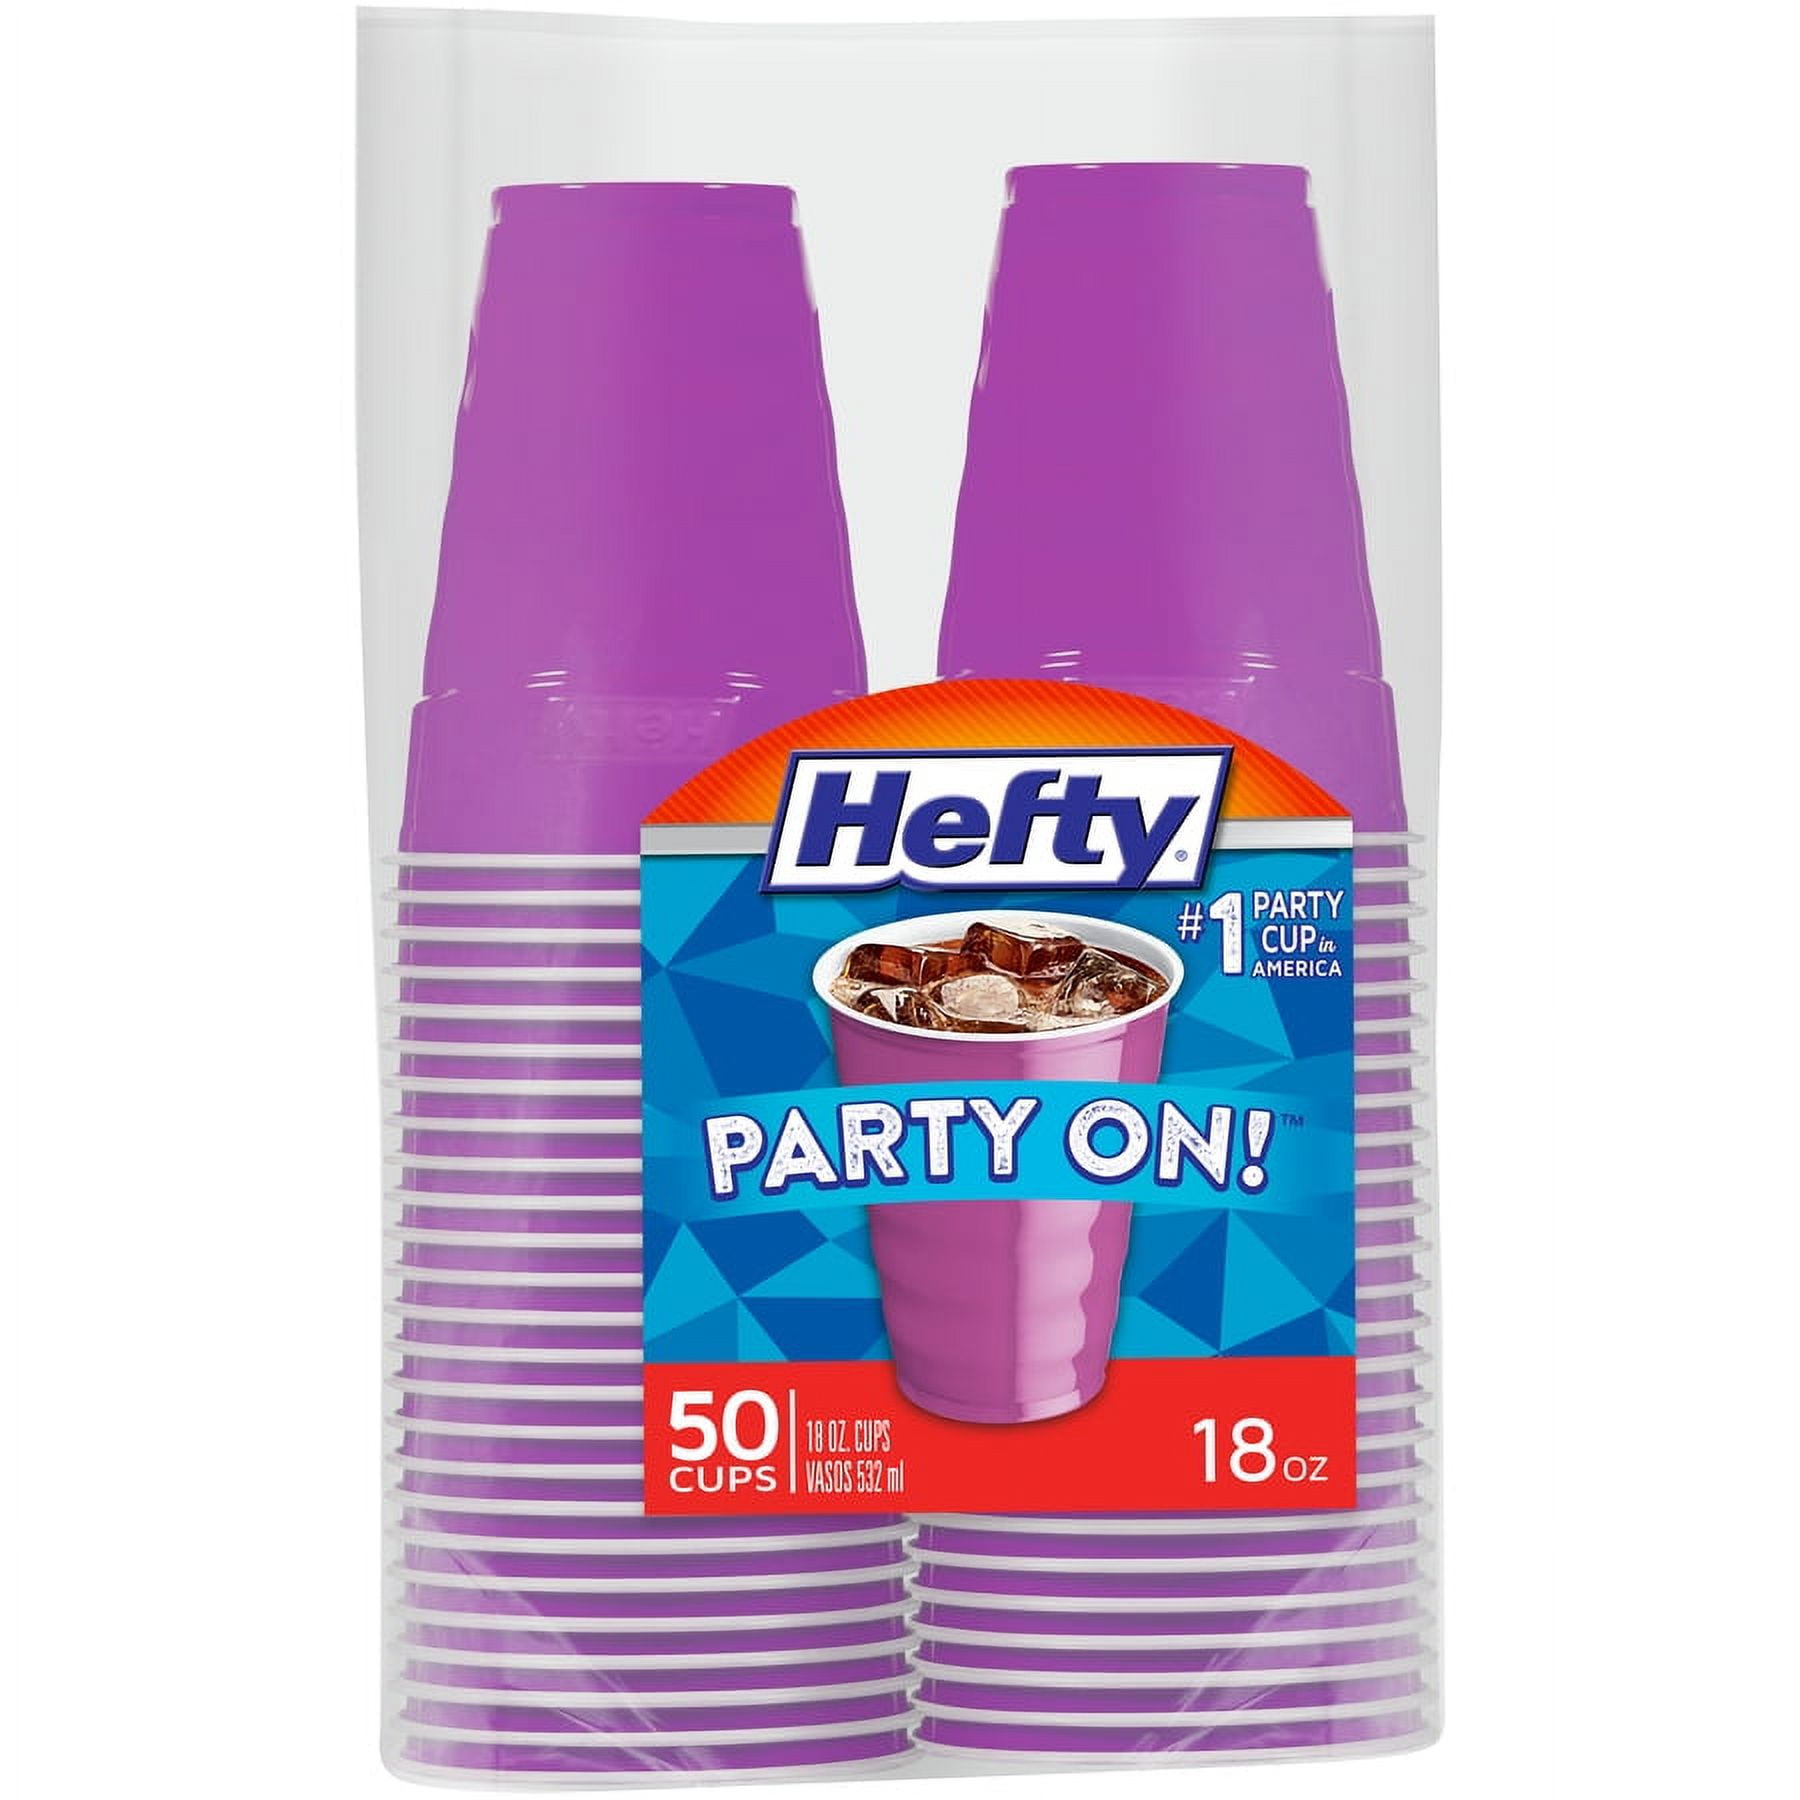 New Purple Plastic Cups (Pack of 20) - 18 oz. - Versatile Drinkware for  Indoor & Outdoor Parties, We…See more New Purple Plastic Cups (Pack of 20)  